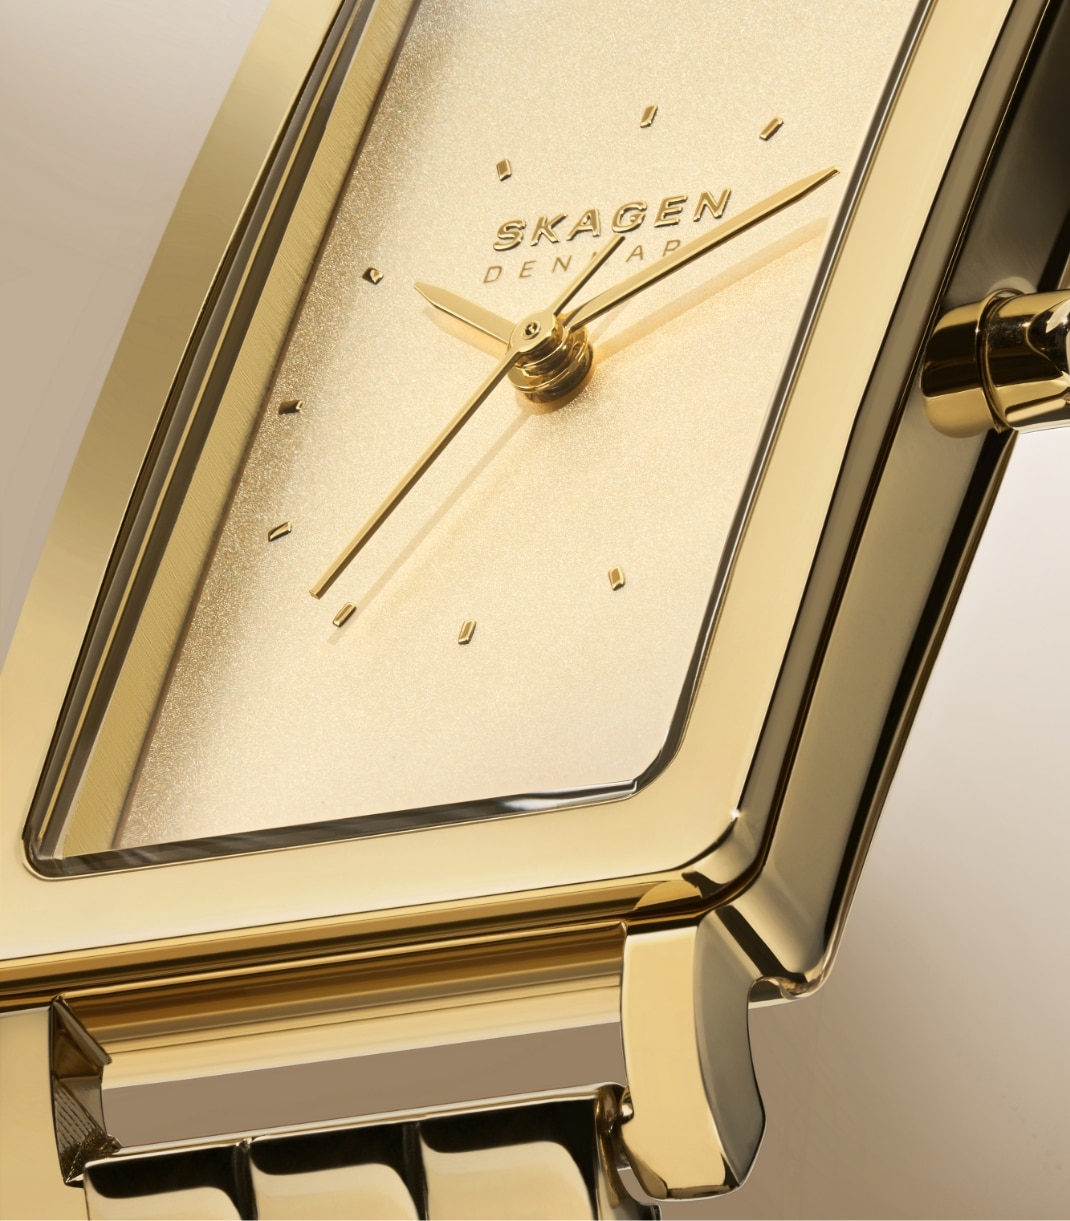 Mehrere Bilder mit Uhren aus der neuen Kollektion Hagen